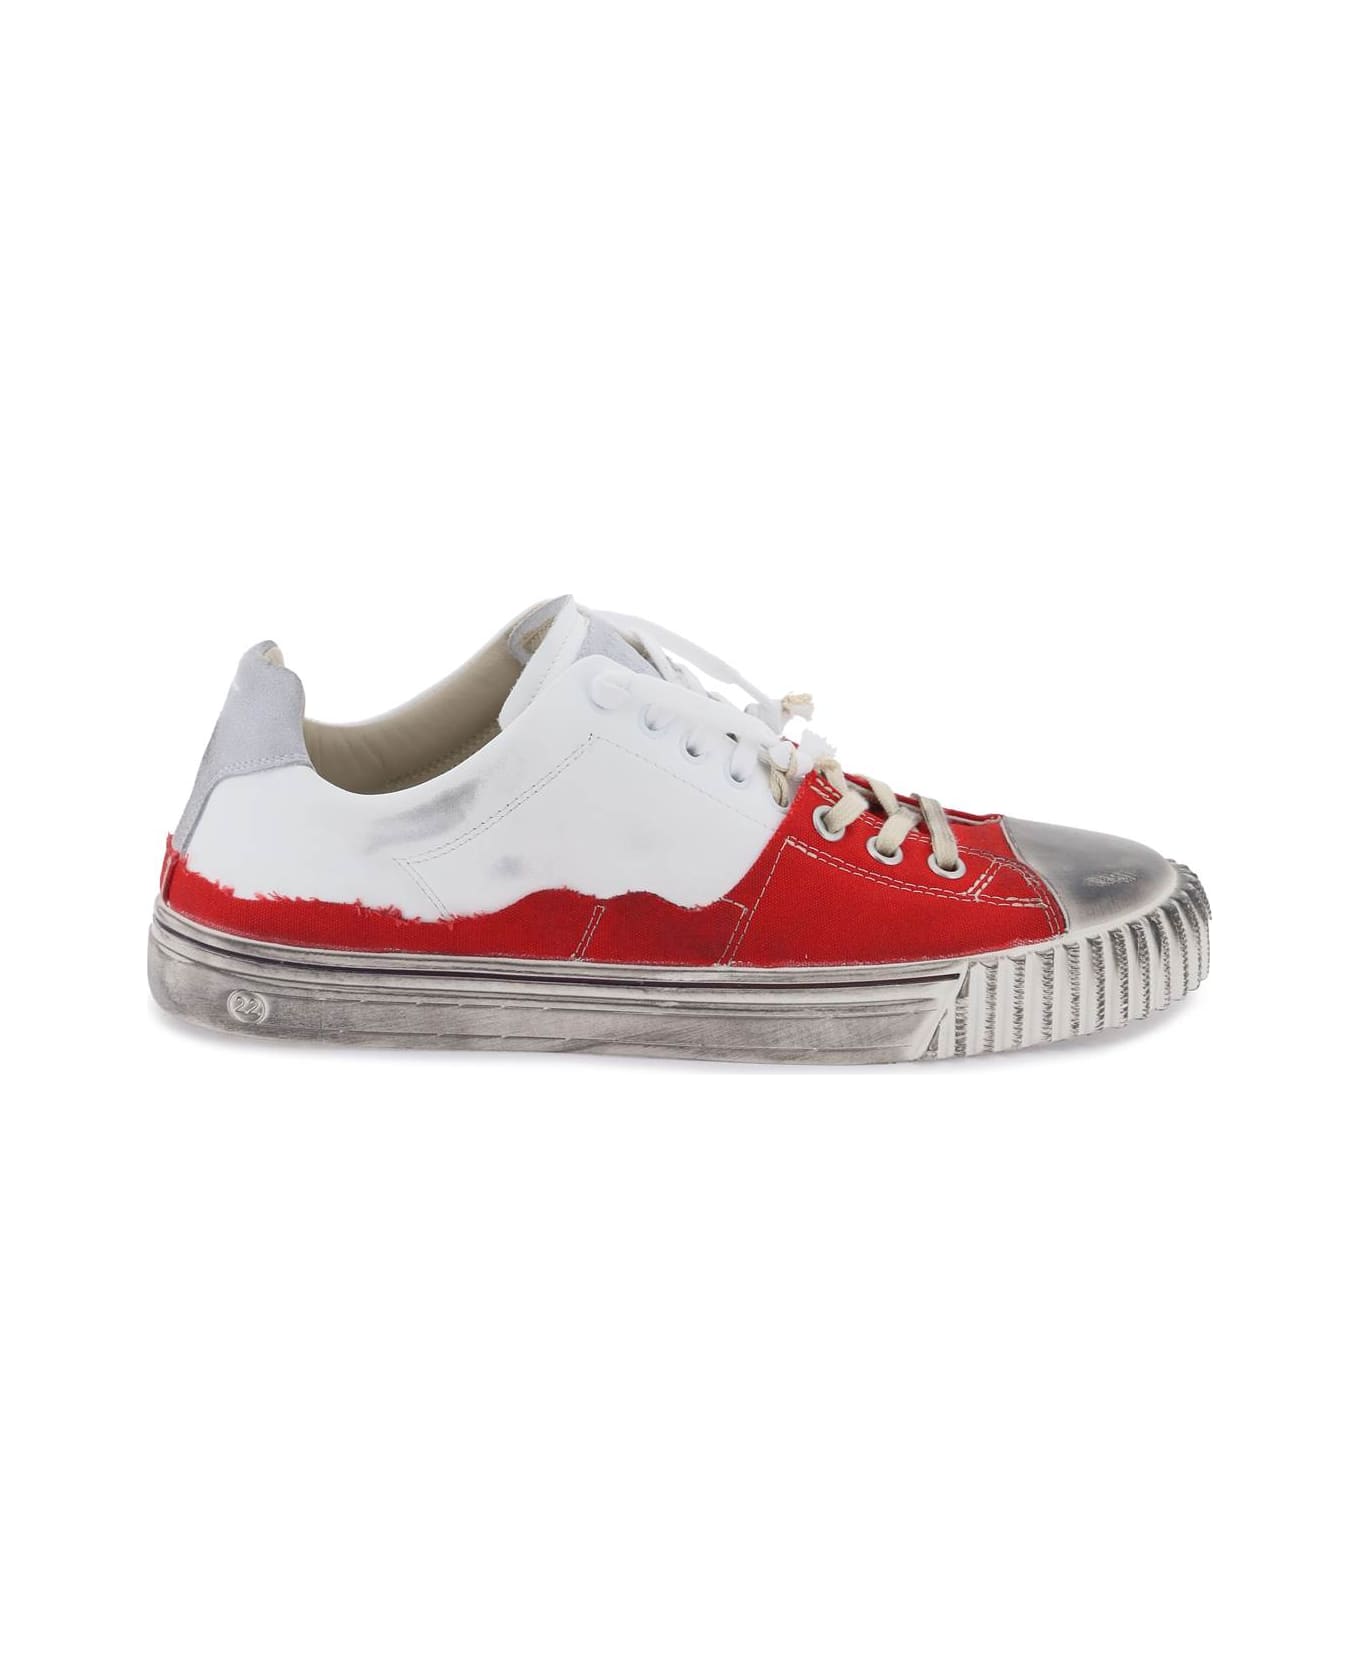 Maison Margiela New Evolution Panelled Sneakers - RED WHITE (White) スニーカー